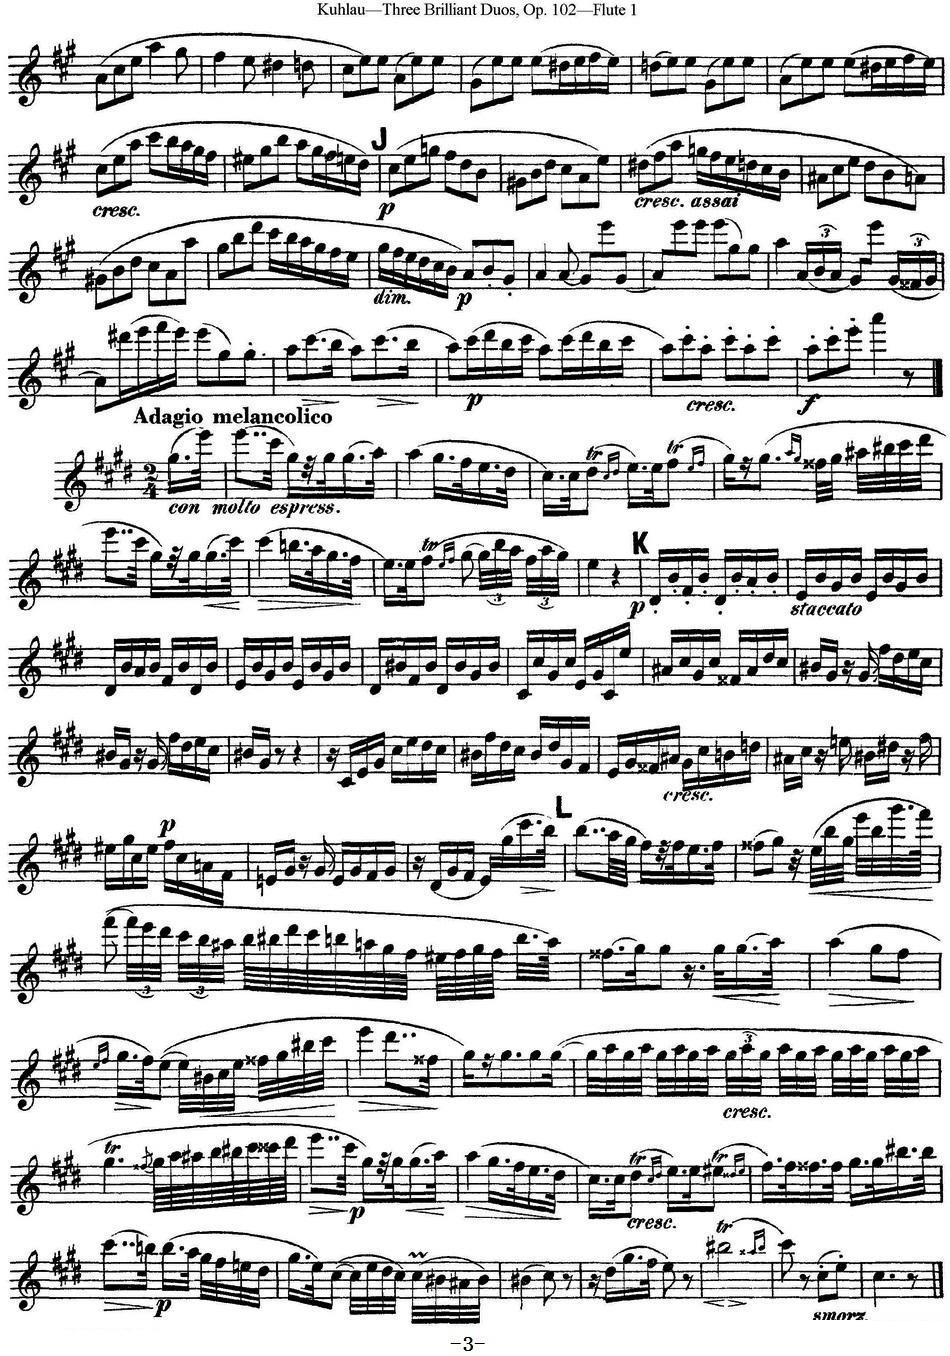 《库劳长笛二重奏练习三段OP.102——Flute 1》长笛谱